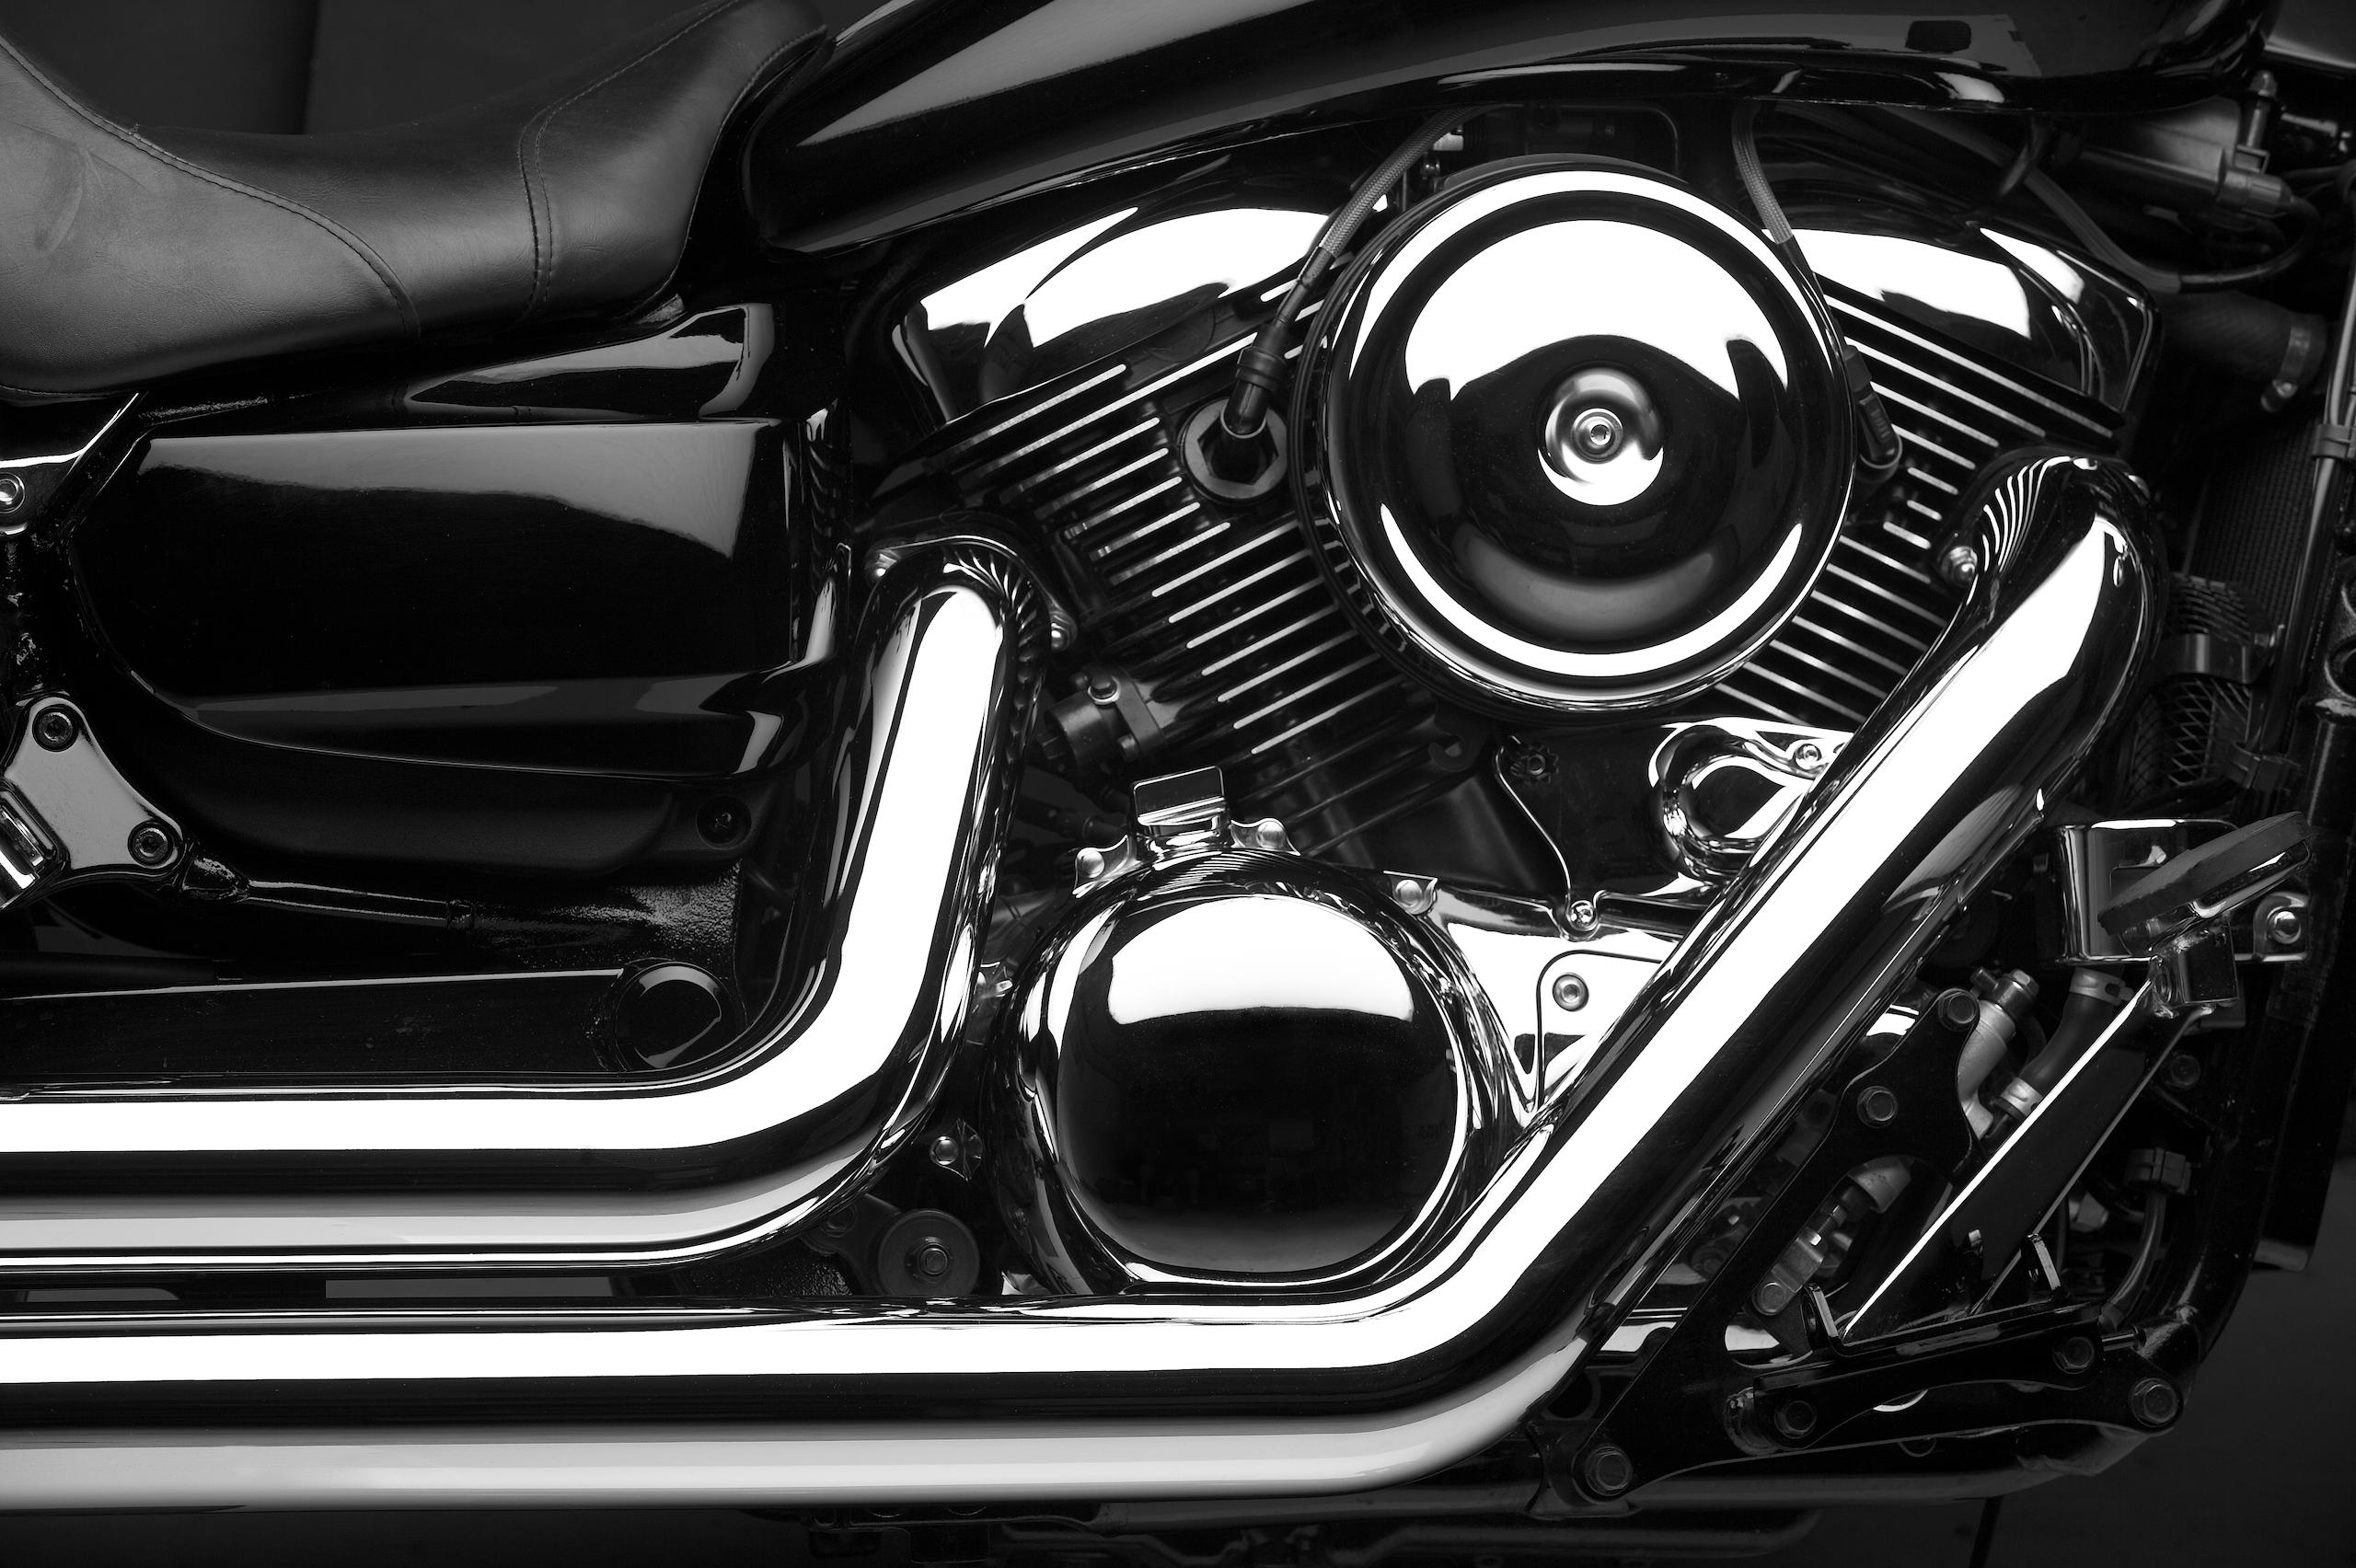 Motorcycle engine types explained - Motorbimble